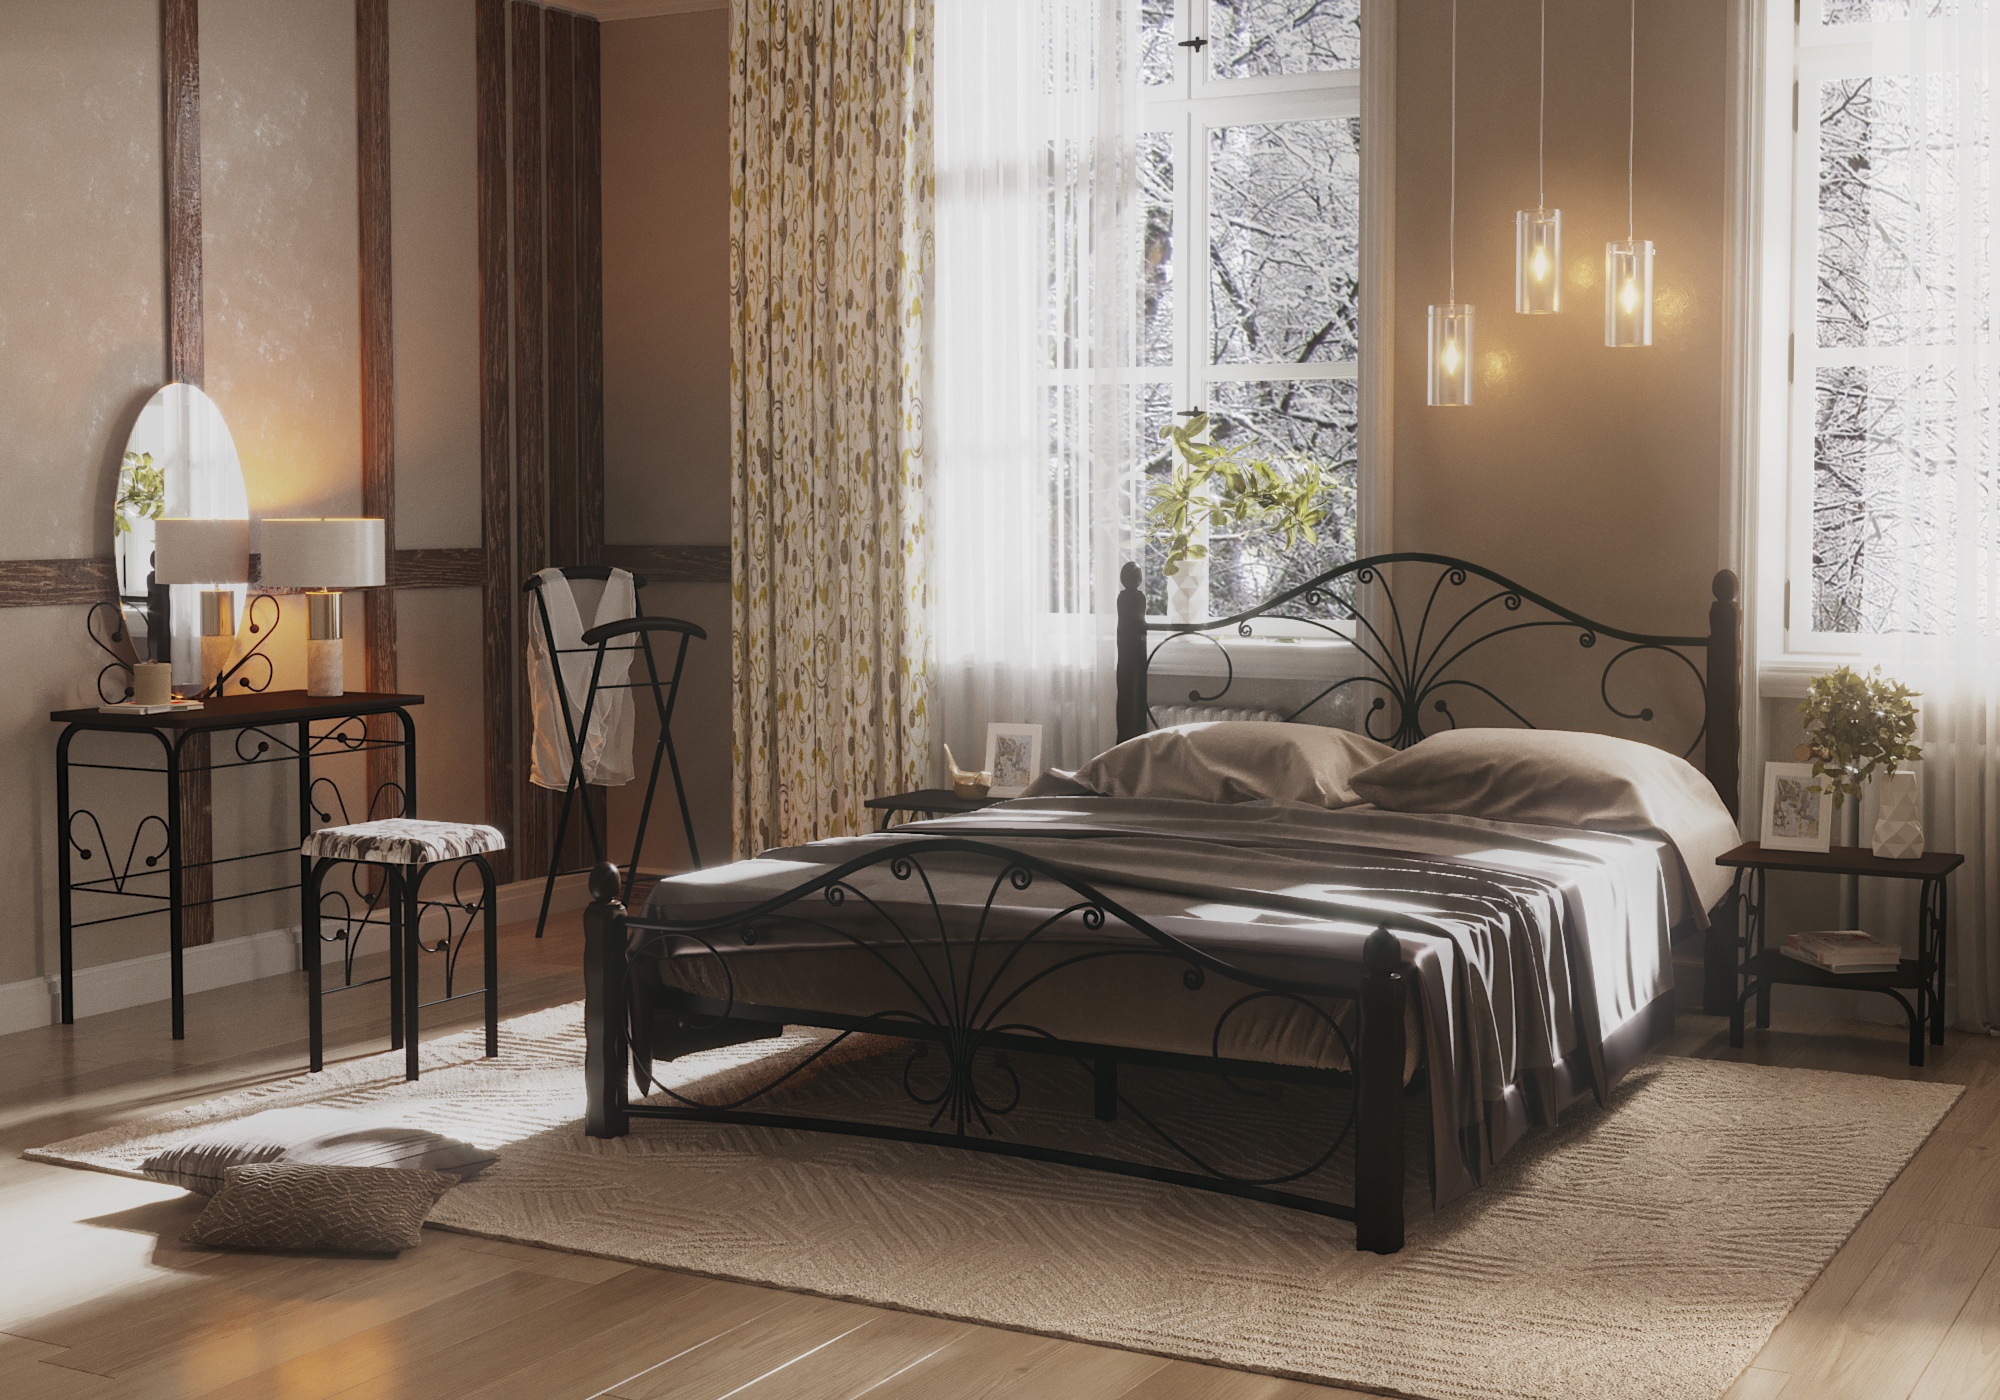 Camera da letto, letti forgiati in 3d max corona render immagine